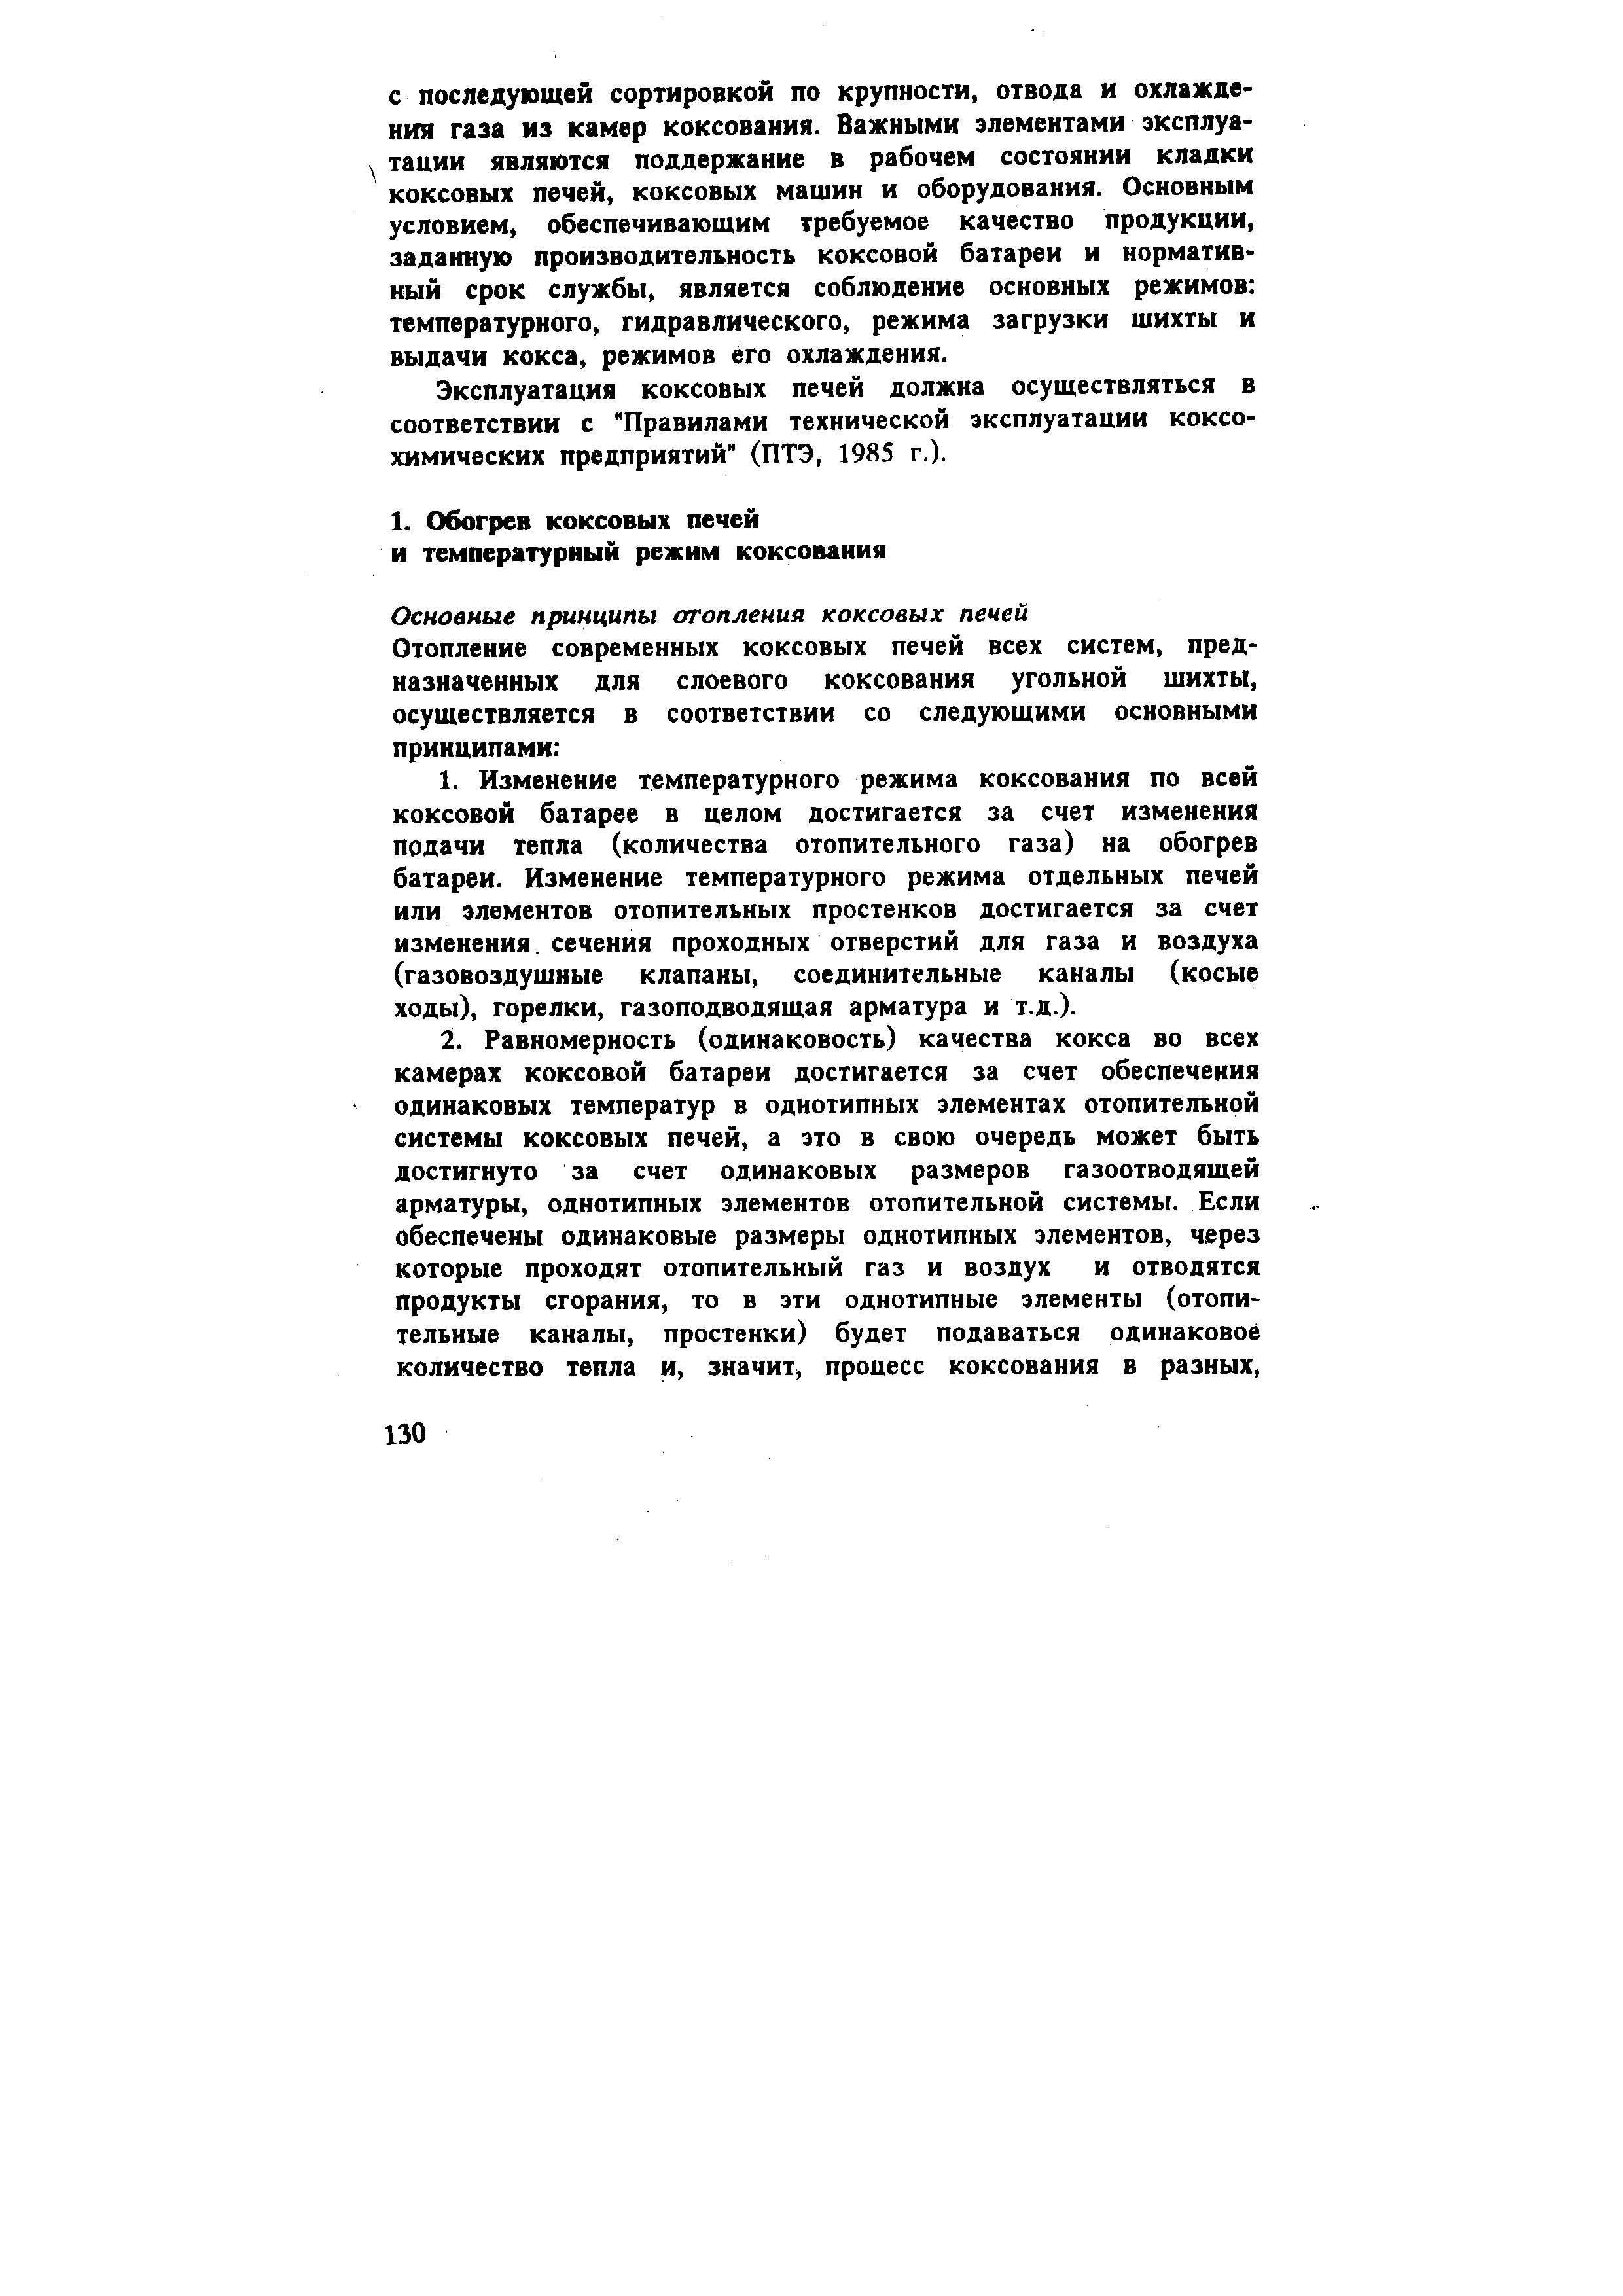 Эксплуатация коксовых печей должна осуществляться в соответствии с Правилами технической эксплуатации коксохимических предприятий (ПТЭ, 1985 г.).